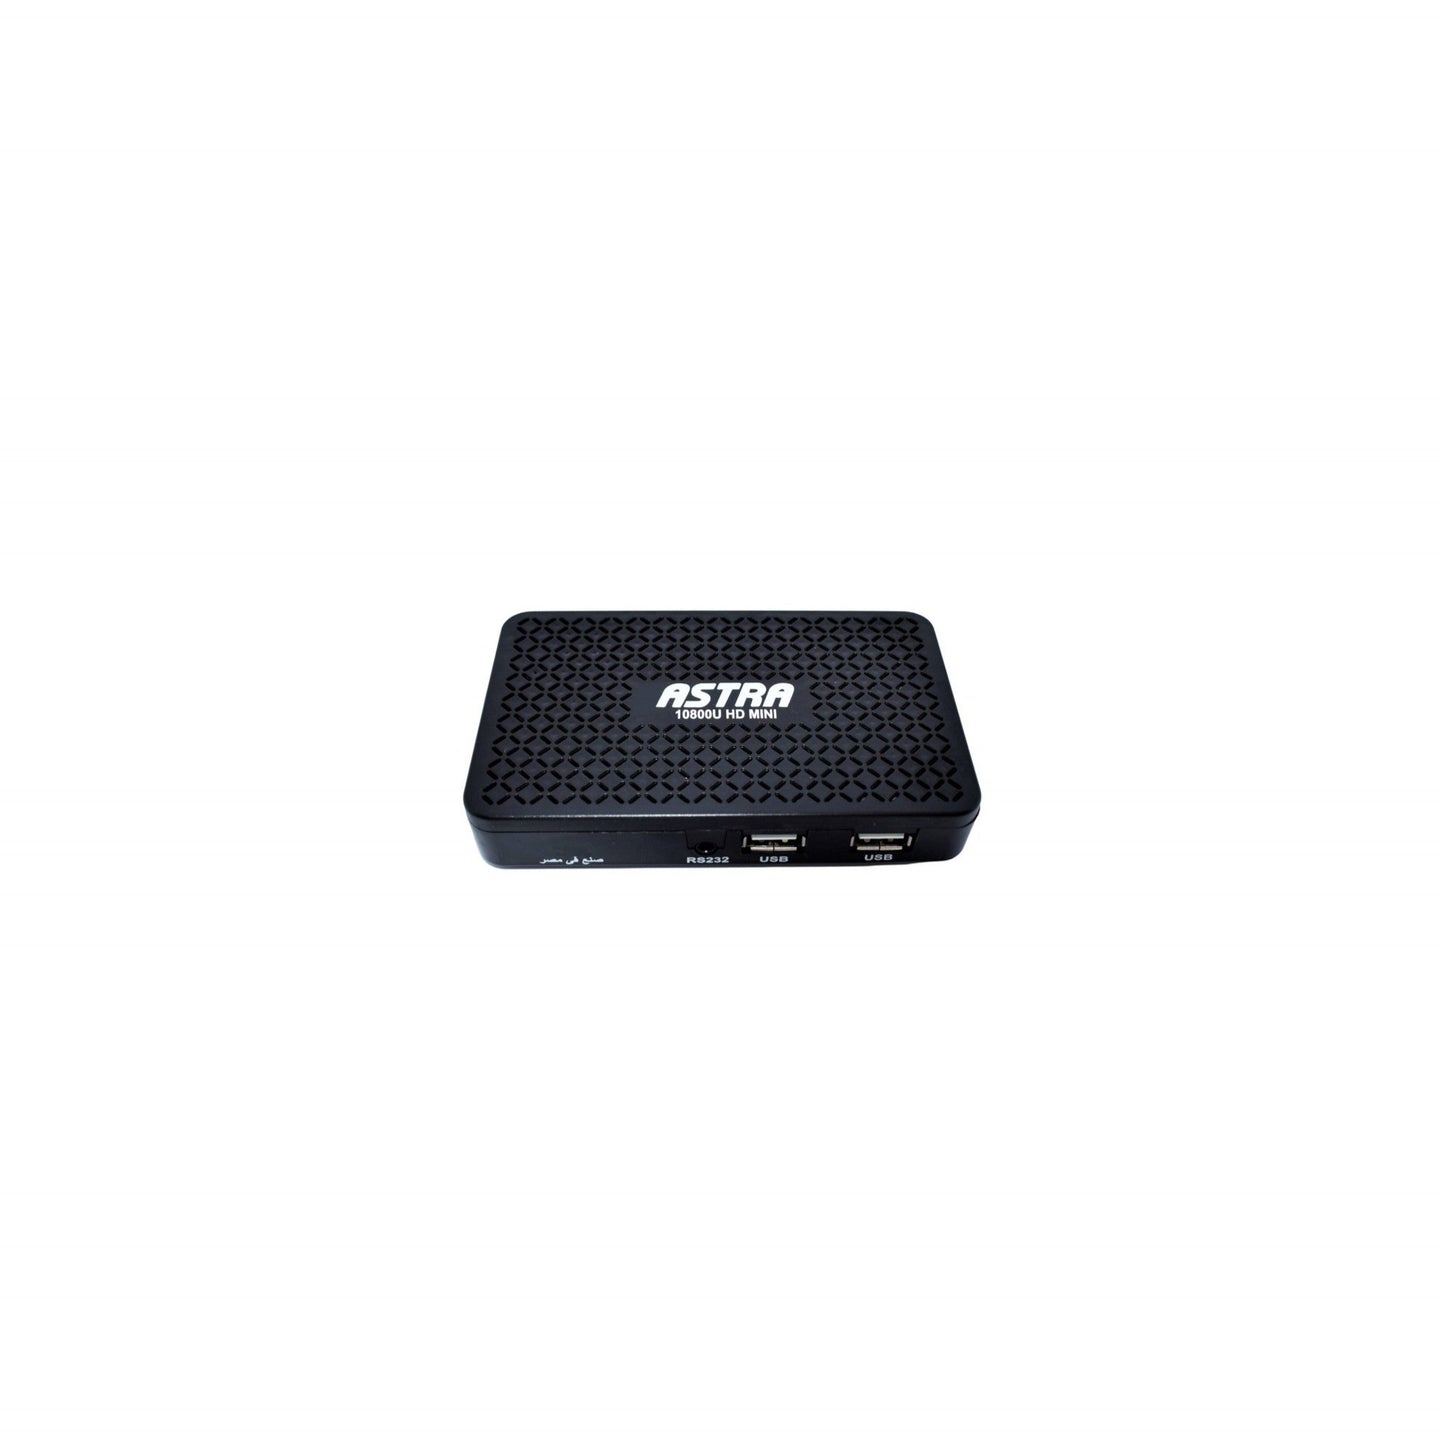 Receiver ASTRA 10800U HD Mini